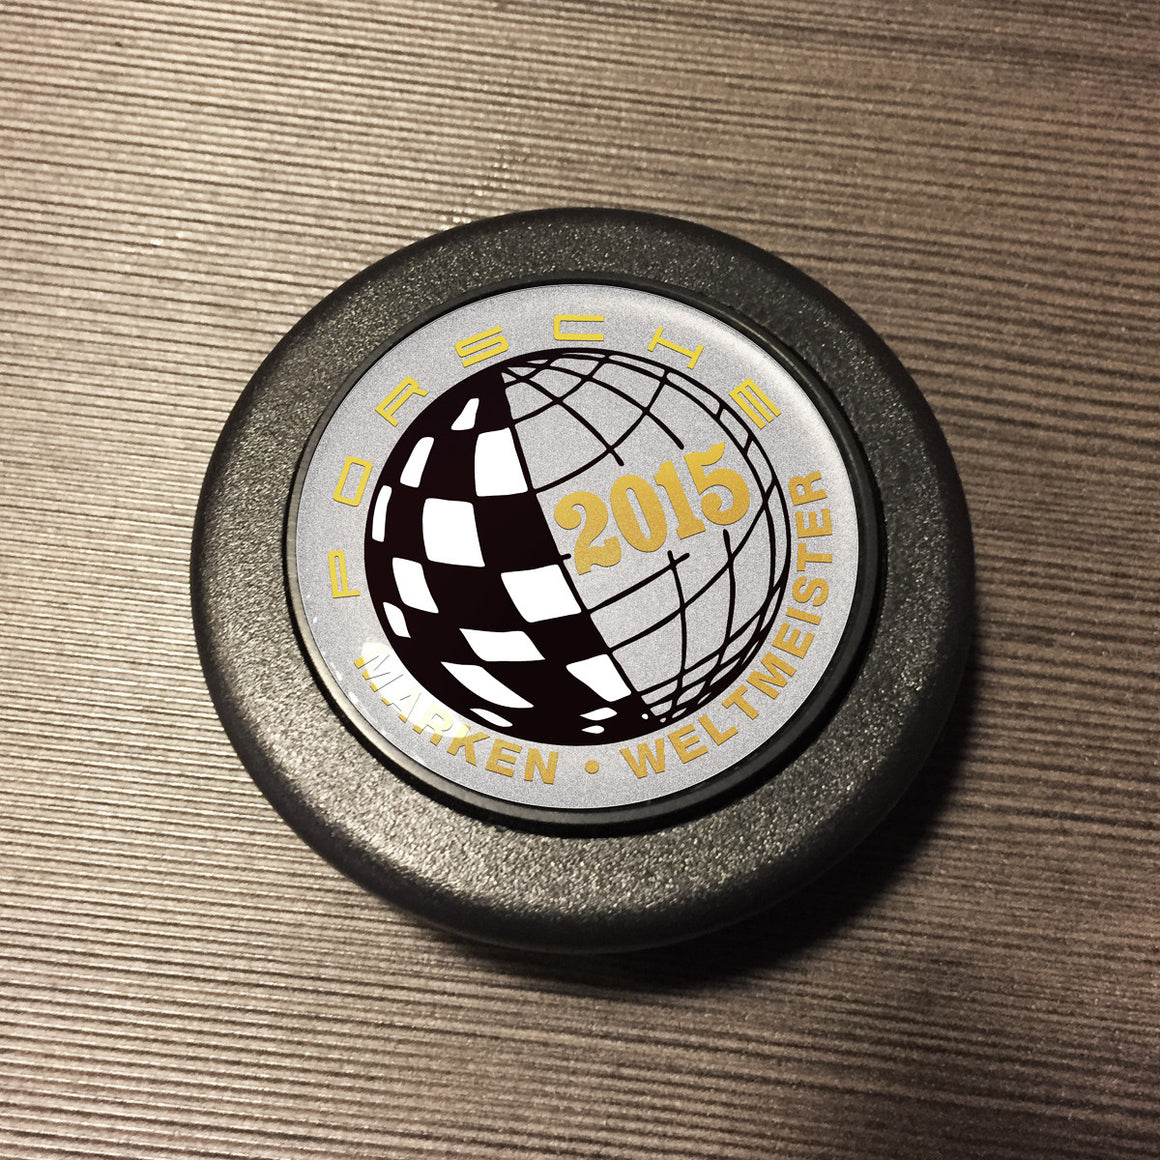 (New) 911/912/930 Marken Weltmeister 2015 Horn Button - 1965-